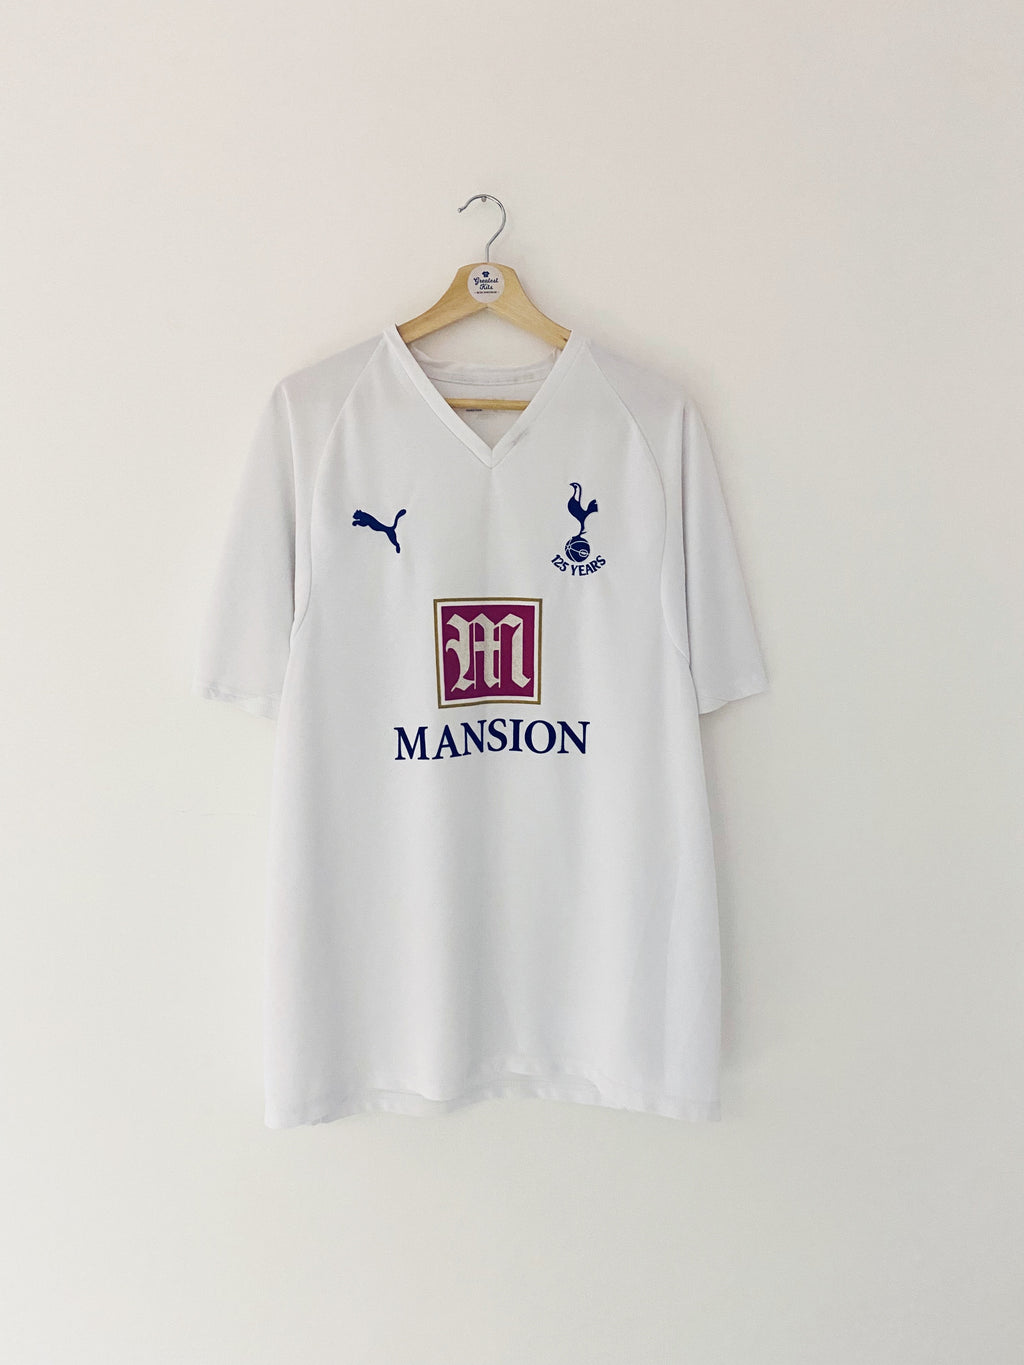 Camiseta de local del Tottenham Hotspur 2007/08 (XL) 8.5/10